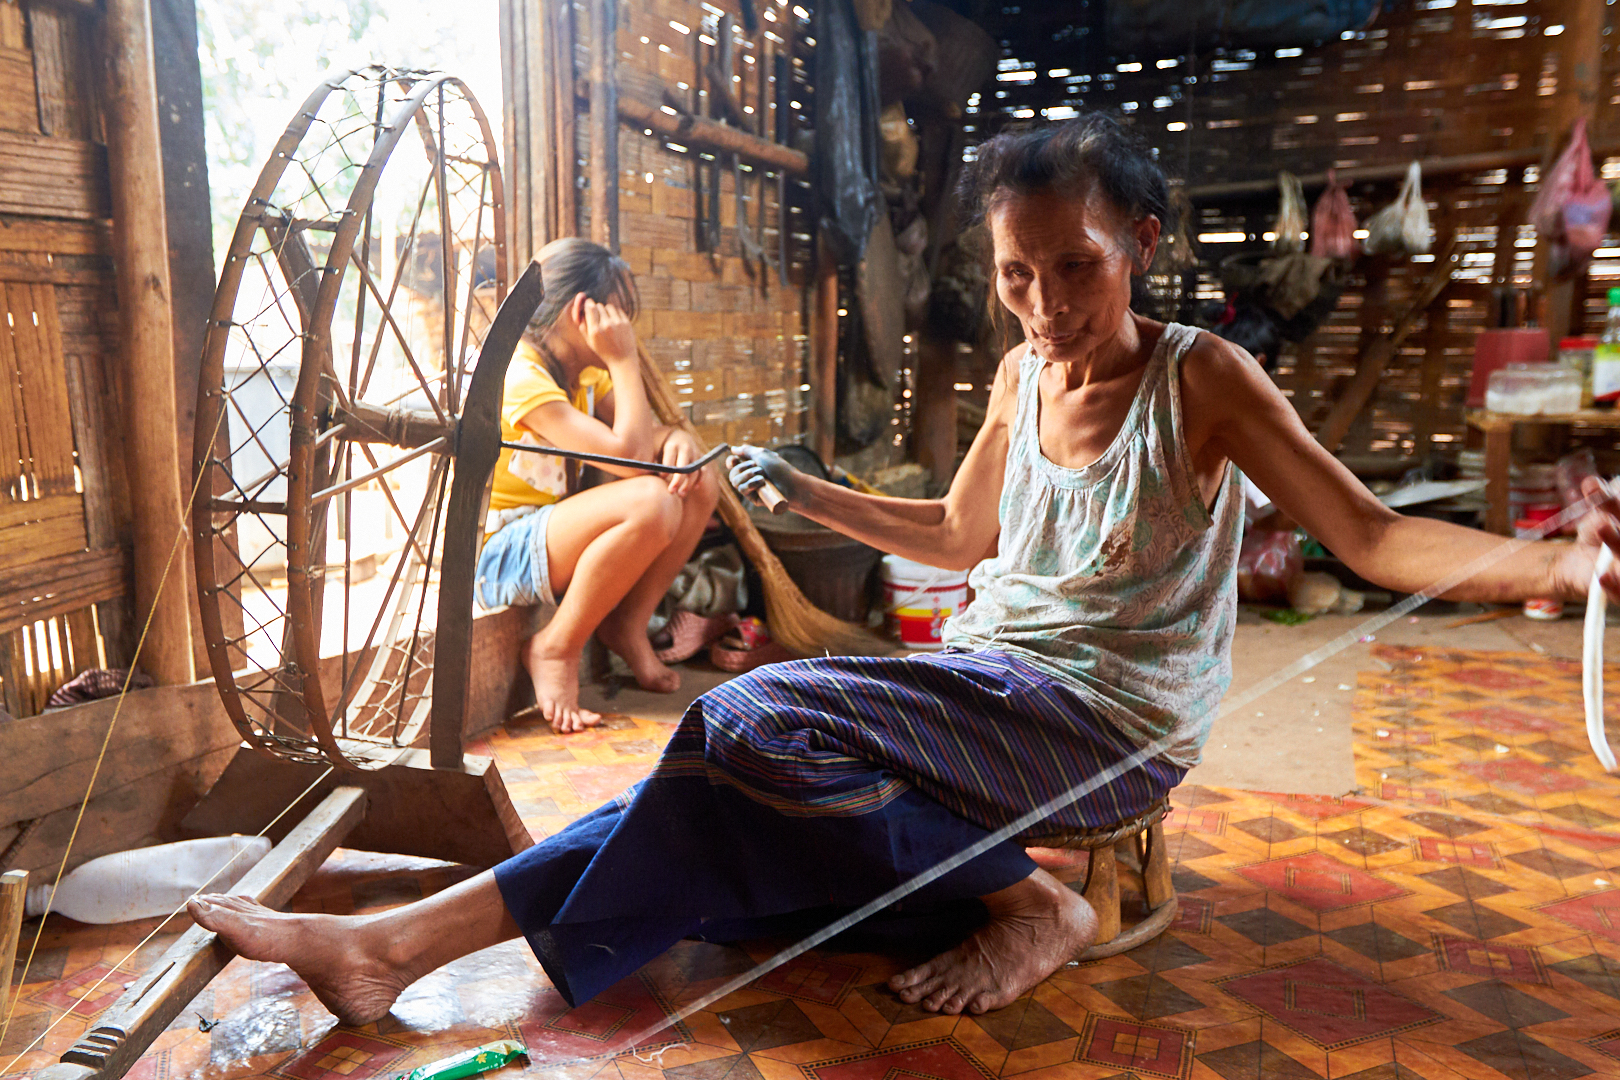 Pvk Photo | Photographe Professionnel | Filage artisanal du coton bio au Laos par une vieille femme